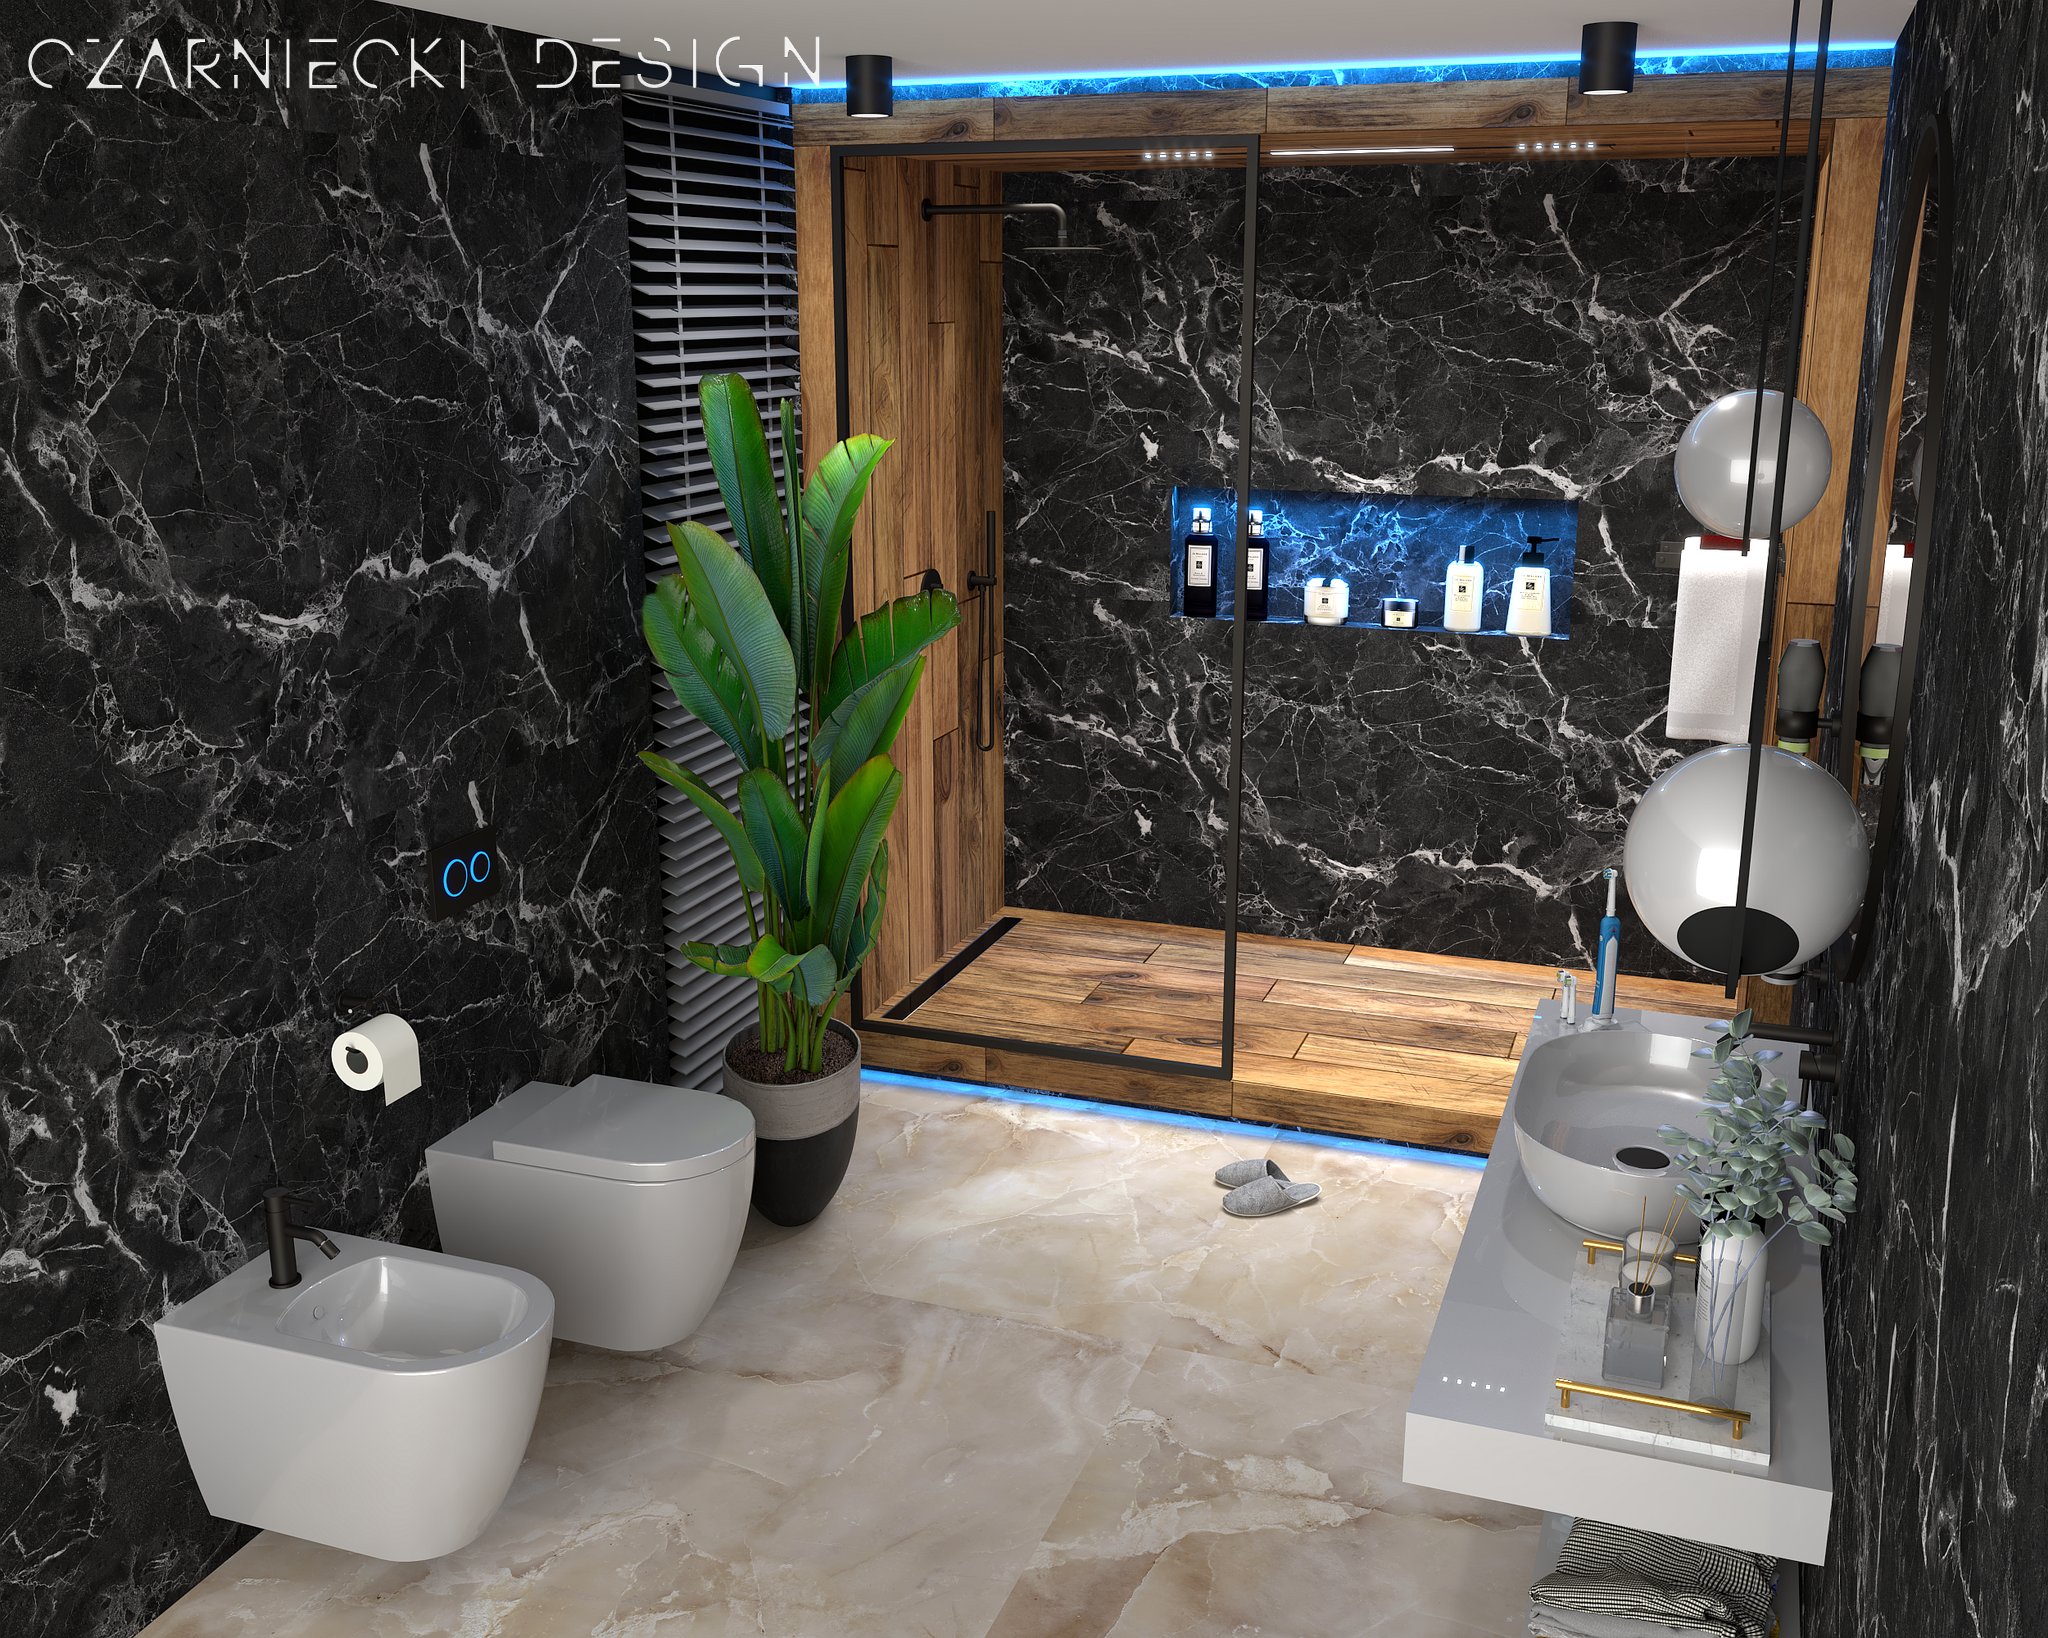 Projekt łazienki wykonany przez Studio Czarniecki Design, w którym zastosowano czarny marmur Nero Marquina, drewnopodobny gres oraz spieki o wyglądzie onyxu na podłodze.